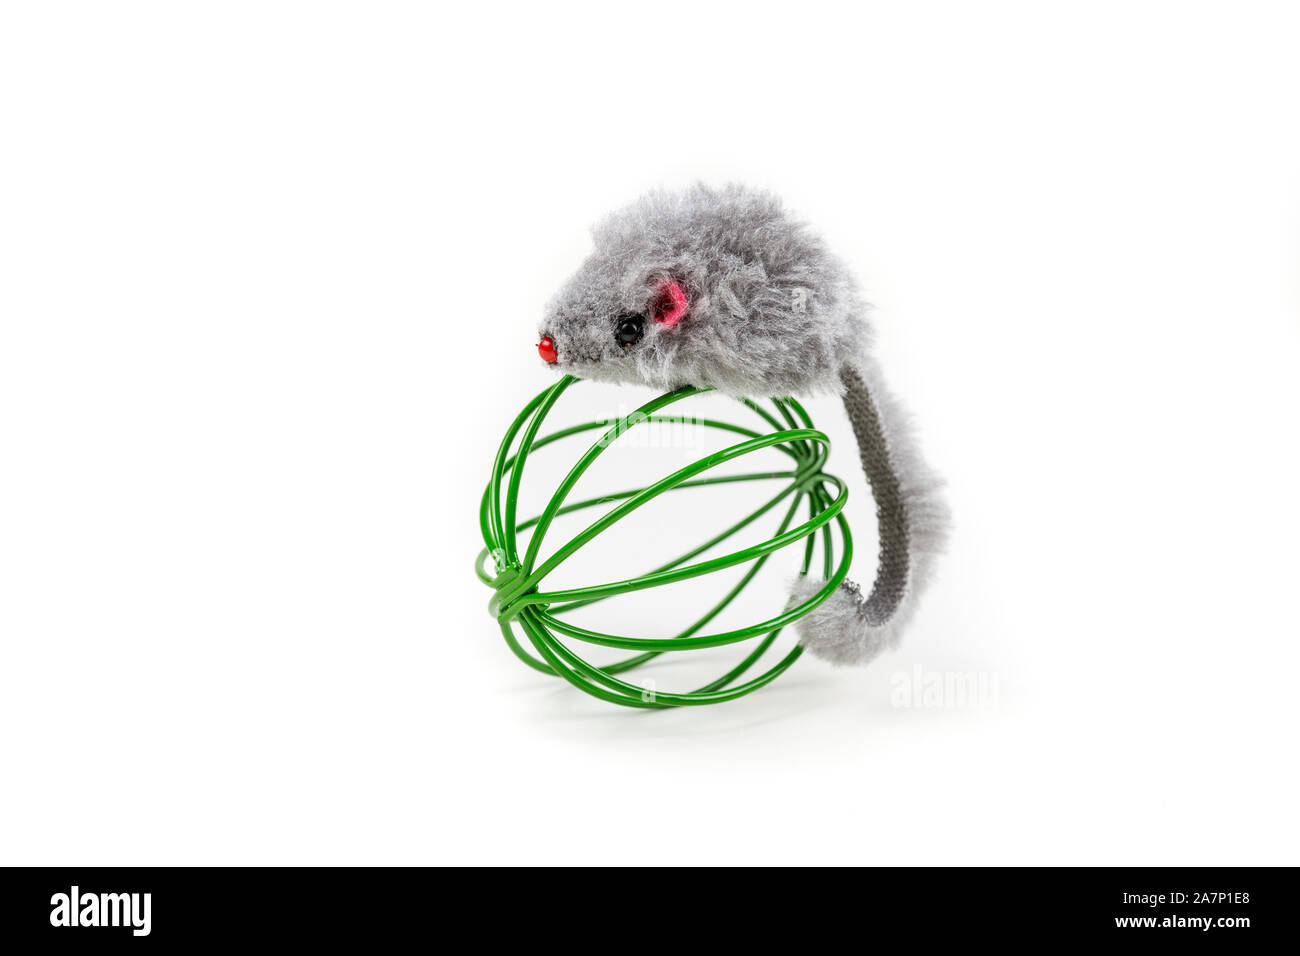 Gris ratón de juguete jugando alrededor de una bola de metal cat Foto de stock